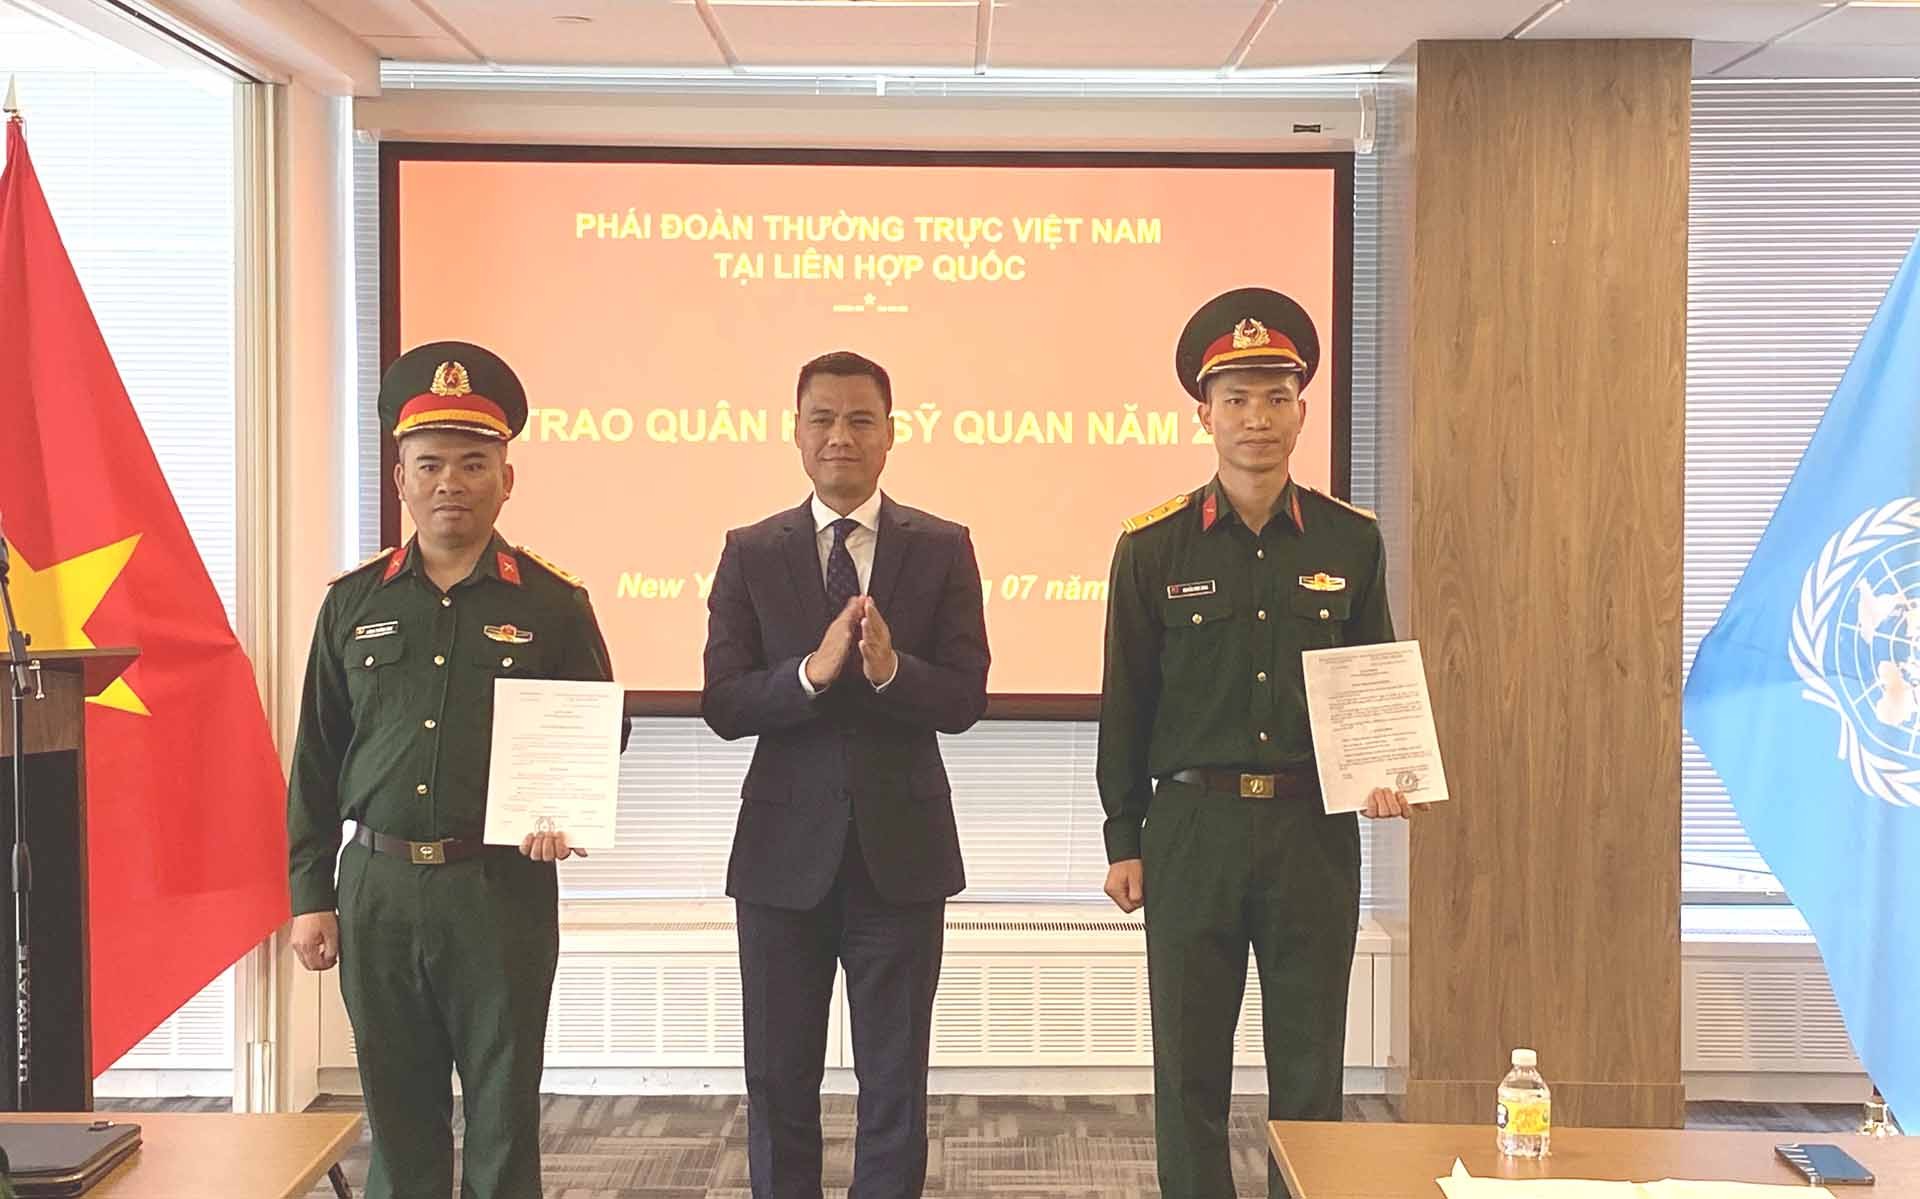 Đại sứ Đặng Hoàng Giang trao quân hàm cho các sỹ quan Quân đội Nhân dân Việt Nam đang phục vụ tại trụ sở LHQ